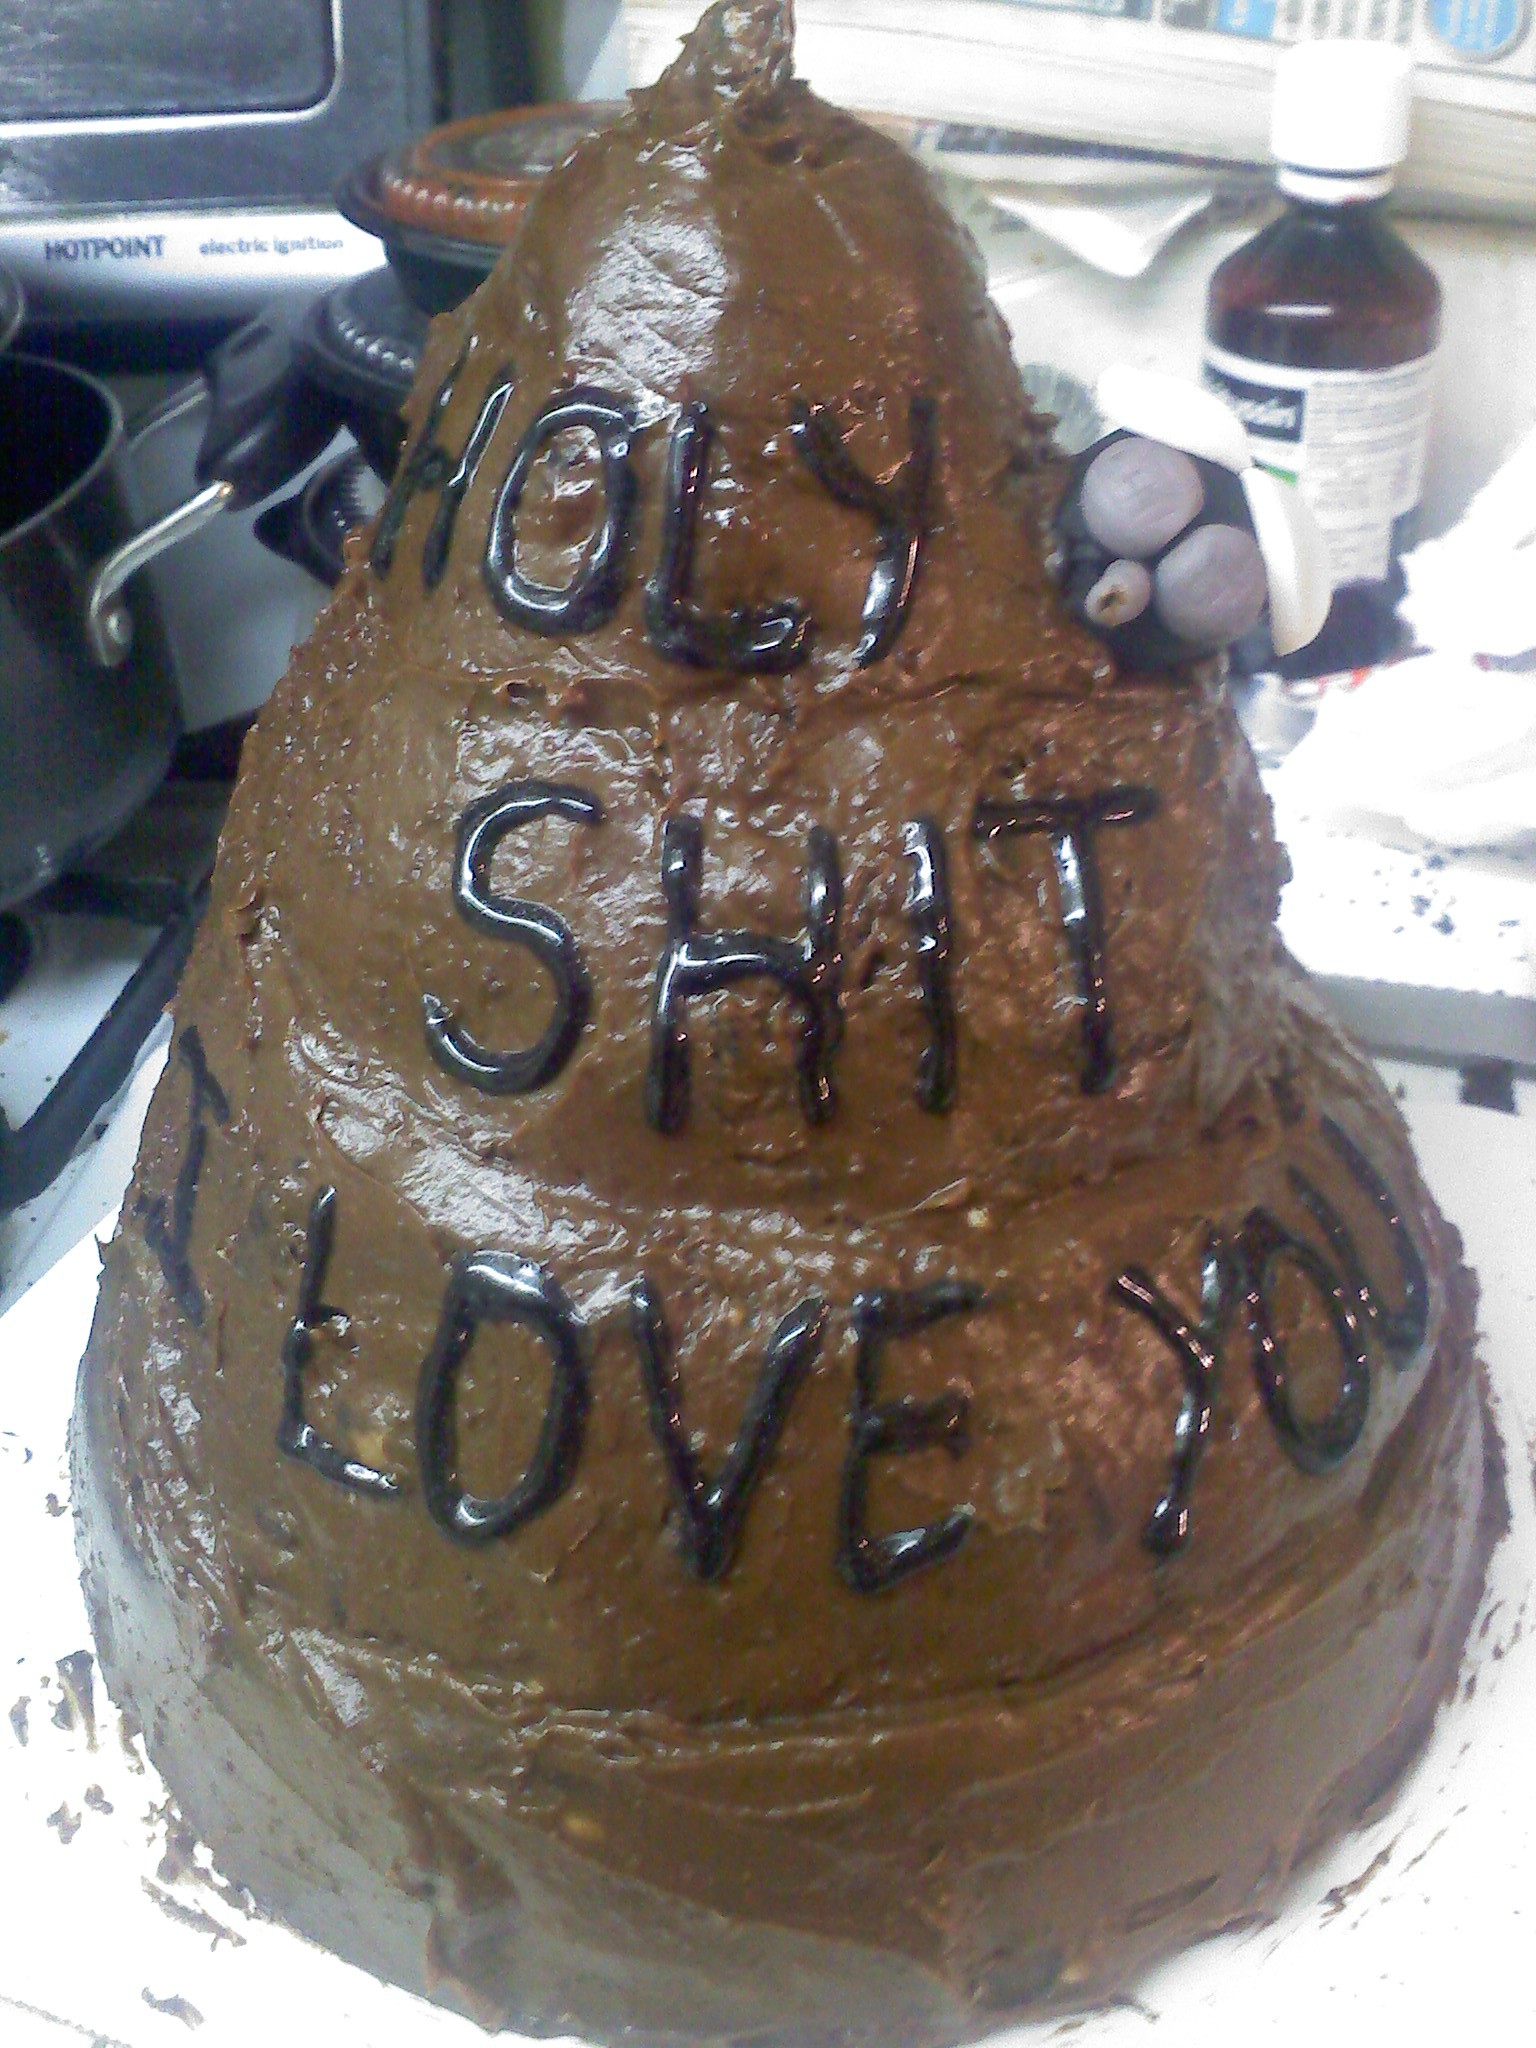 valentines day cake fails - Como ,